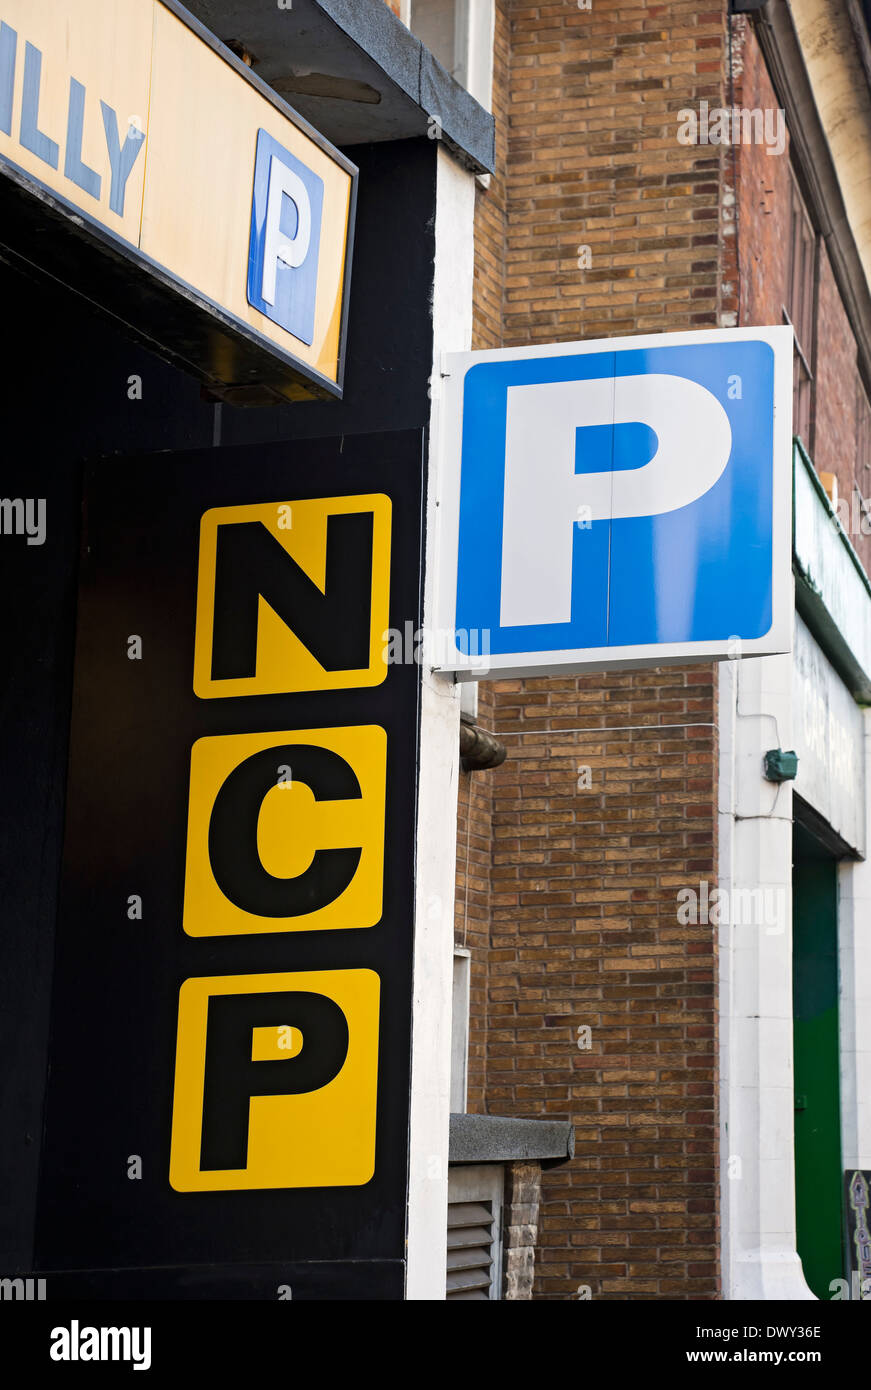 Gros plan du panneau de stationnement NCP extérieur York North Yorkshire Angleterre Royaume-Uni Grande-Bretagne Banque D'Images